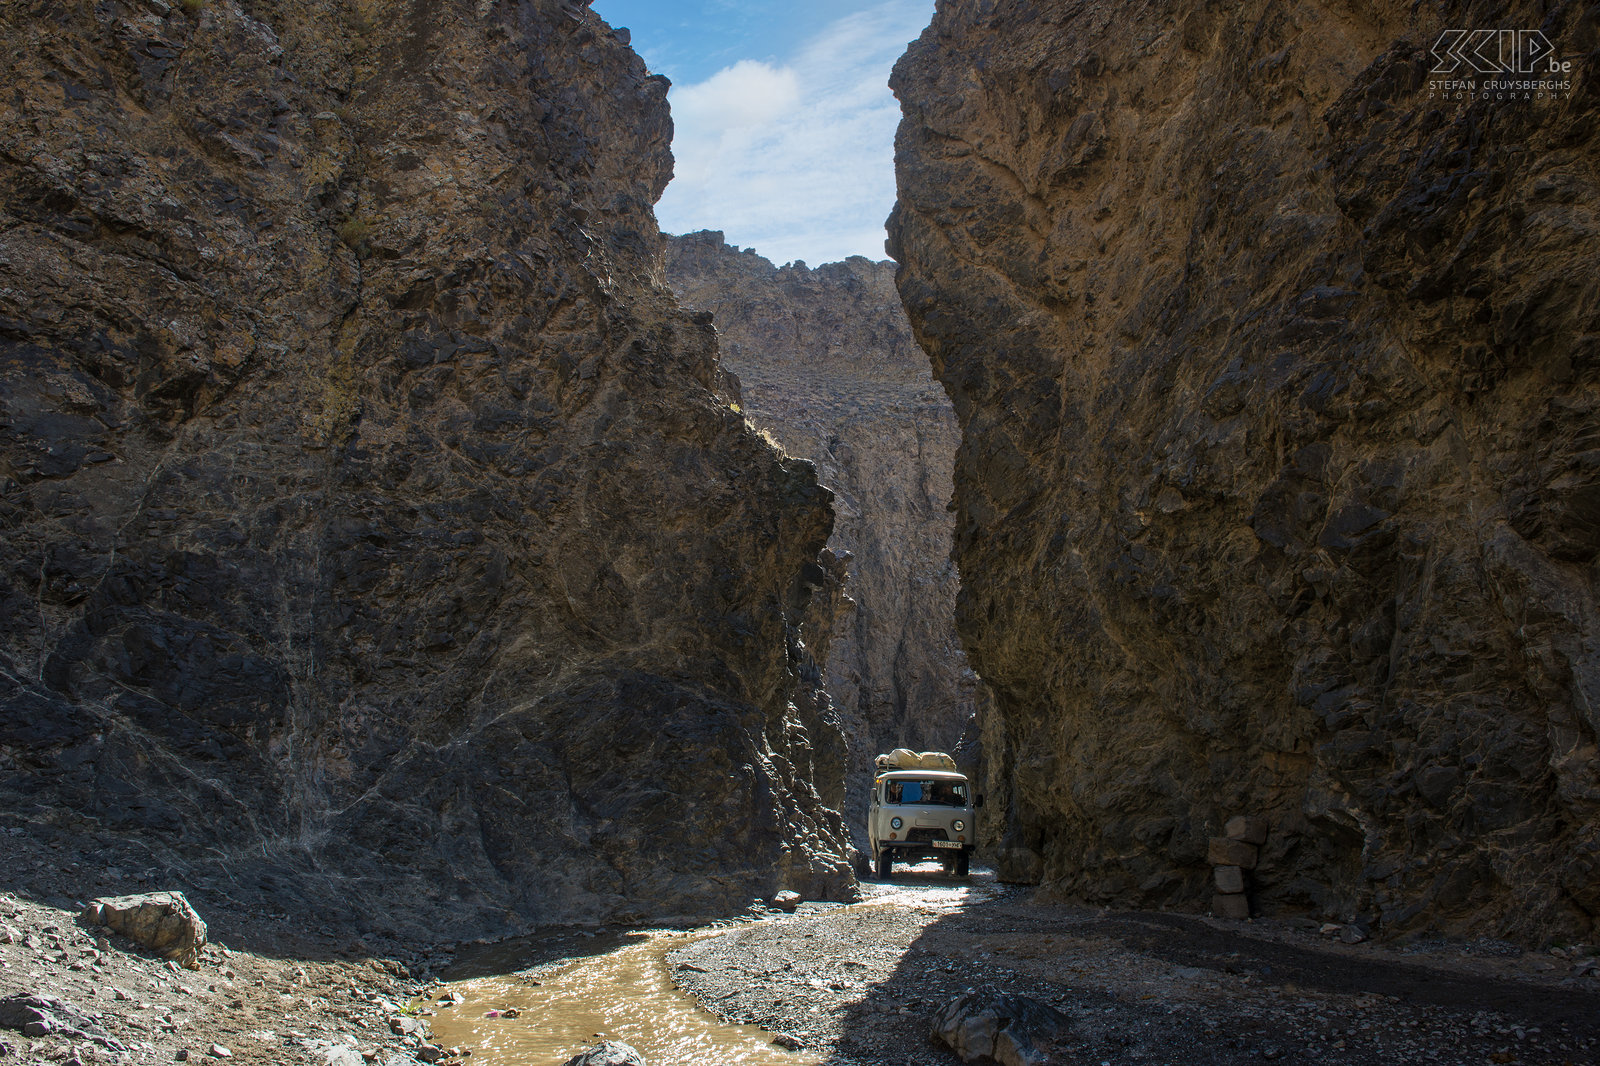 Gobi - Yolin Am Midden in de Gobi woestijn op een hoogte van 2800m ligt de diepe en smalle kloof Yolin Am met wanden van wel 200m hoog. De vallei is vernoemd naar de lammergier, die 'yol' wordt genoemd in het Mongools. Vandaar dat de naam van de kloof vaak vertaald wordt  als ‘Vultures’s mouth’ of  ‘Valley of the vultures’.   Stefan Cruysberghs